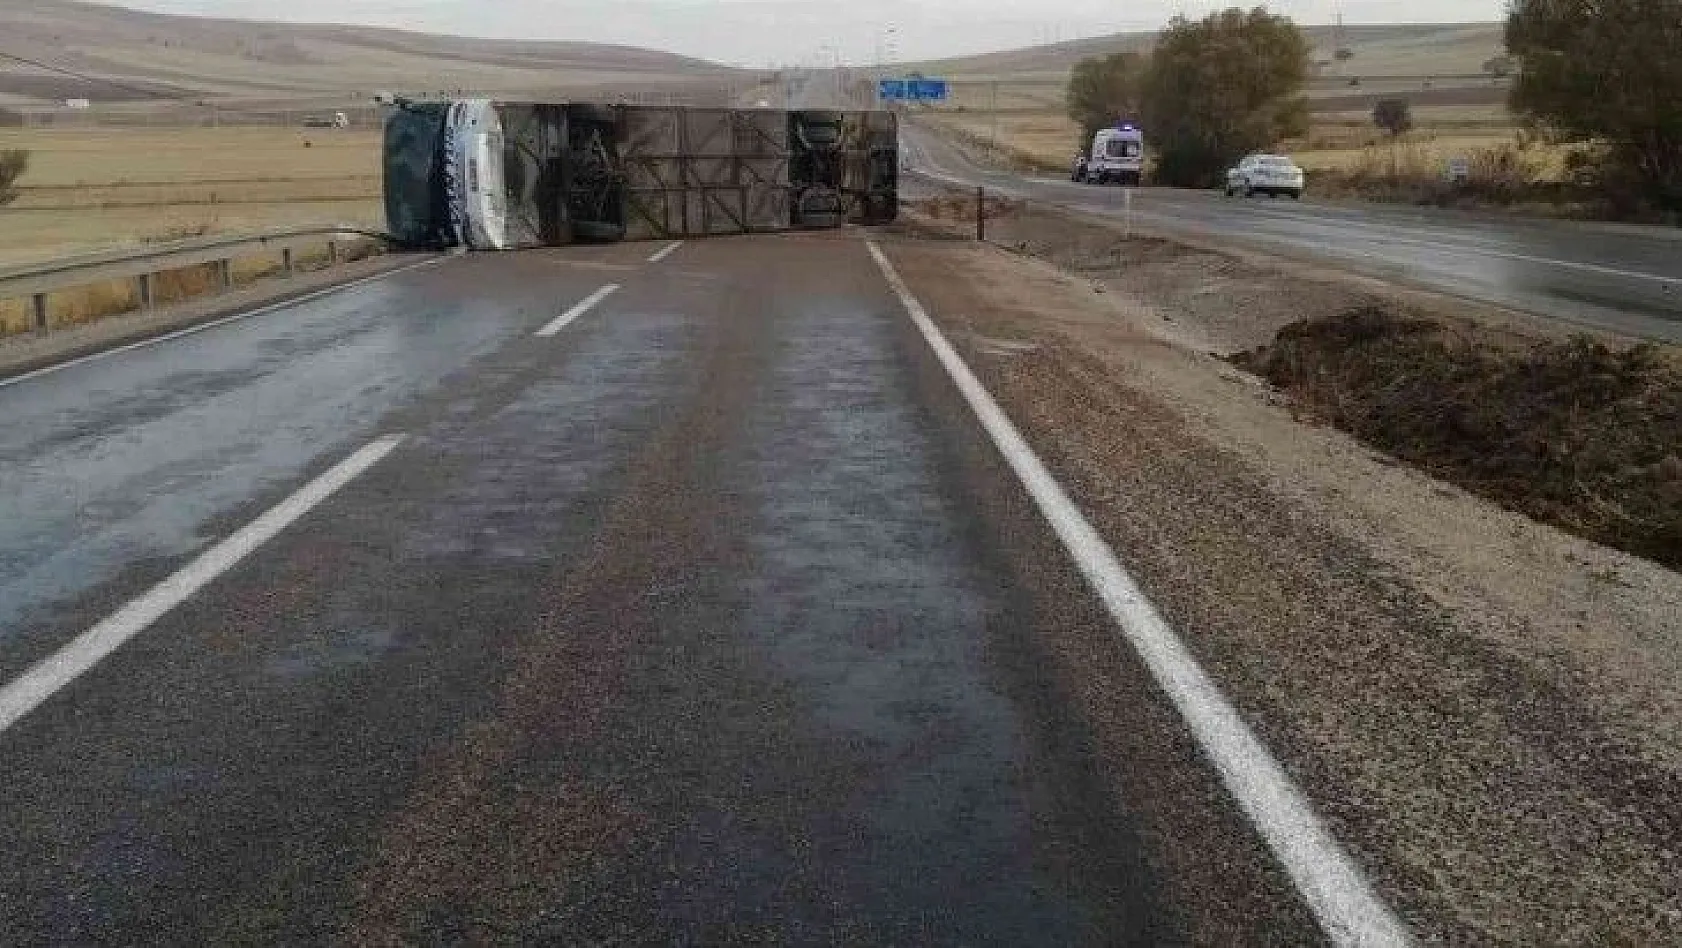 Kayseri'de yolcu otobüsü devrildi: 11 yaralı